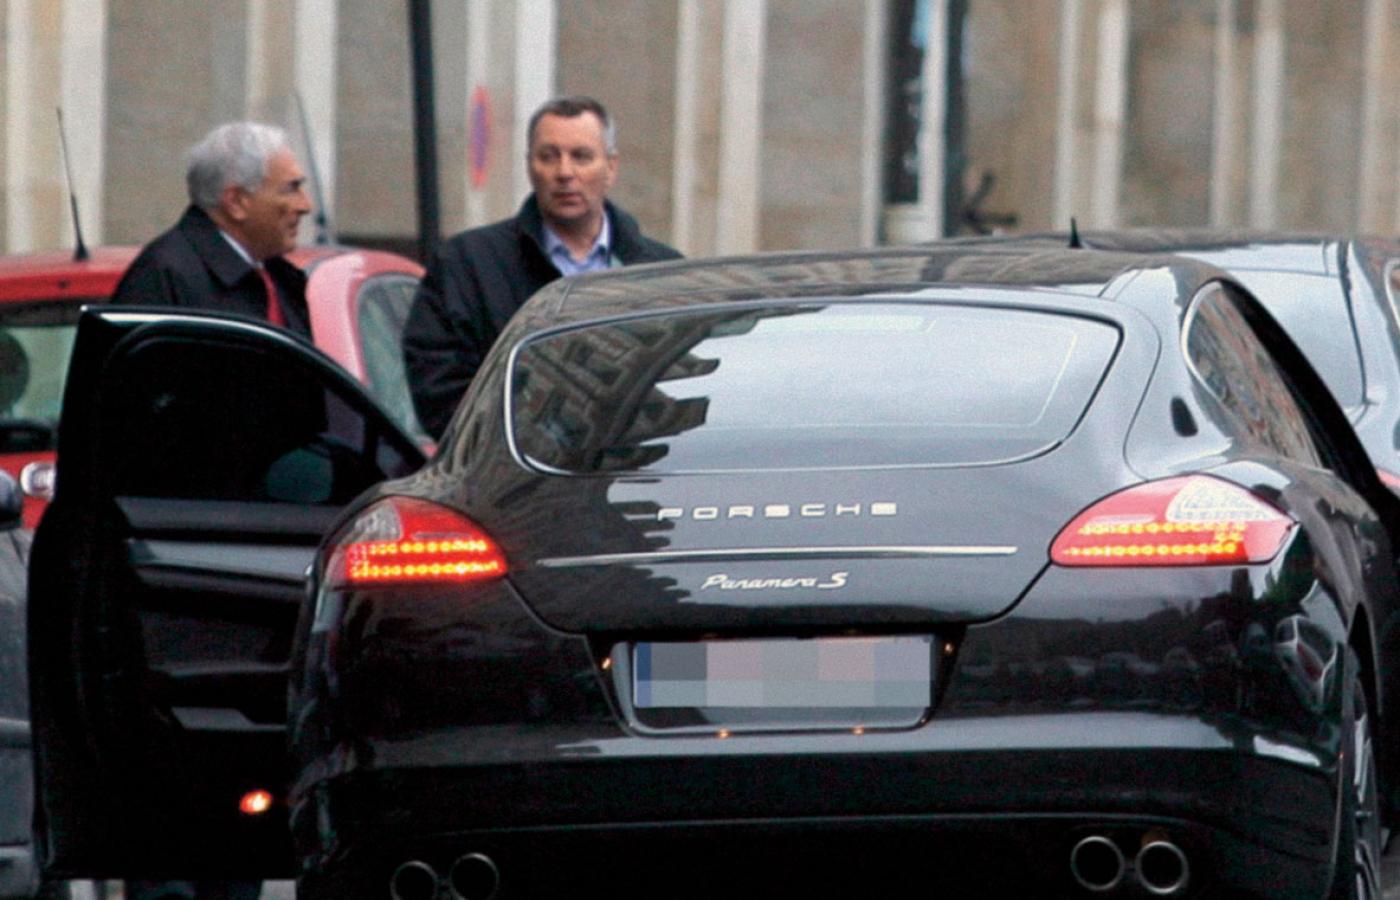 DSK wsiada do eleganckiego Porsche. Czarne auto posłużyło do kampanii czarnego PR wymierzonej w DSK.